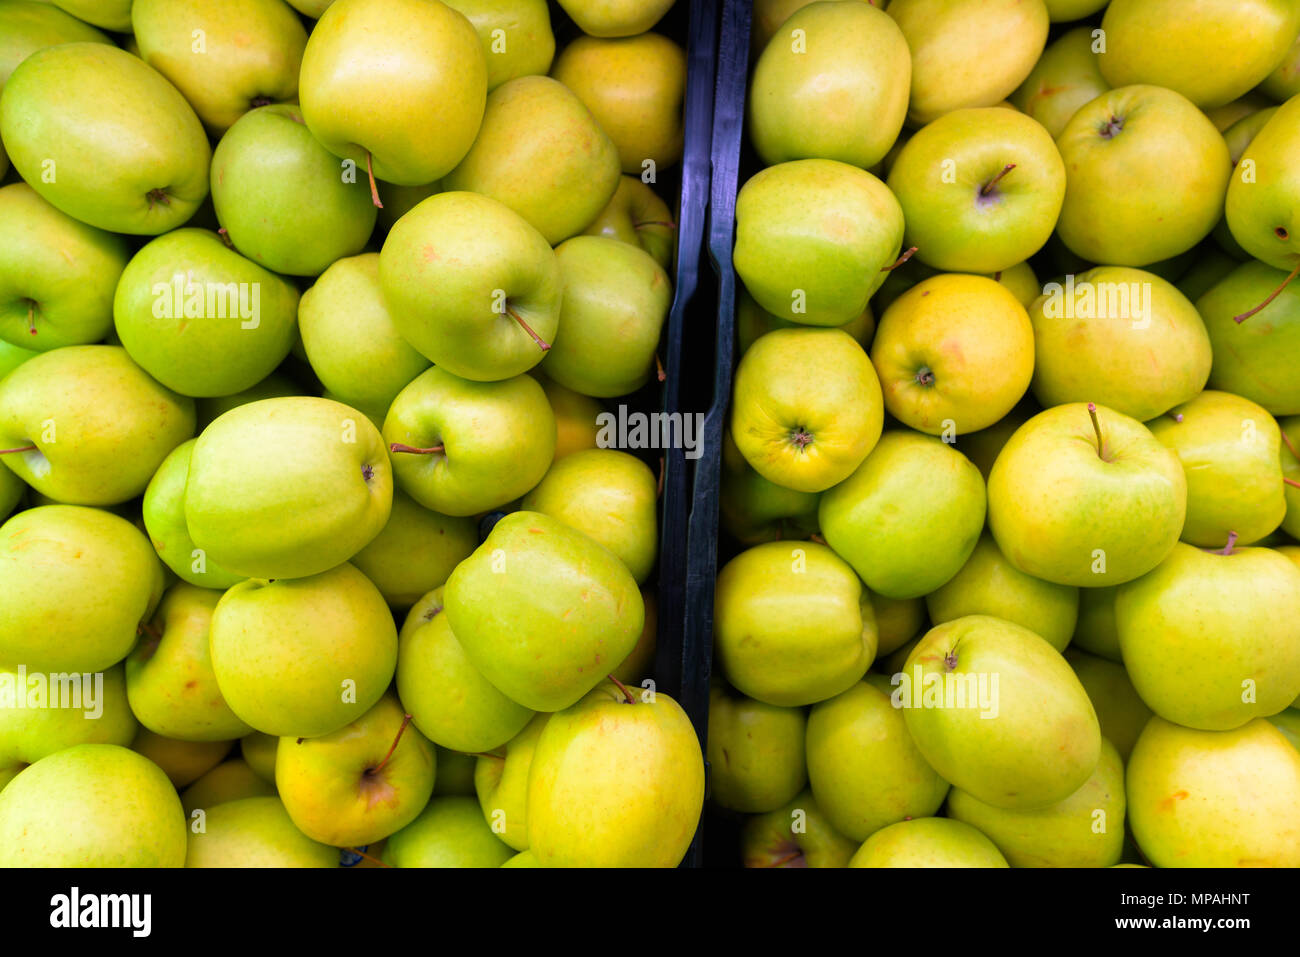 Full Frame Shot Of Green Apples Stock Photo